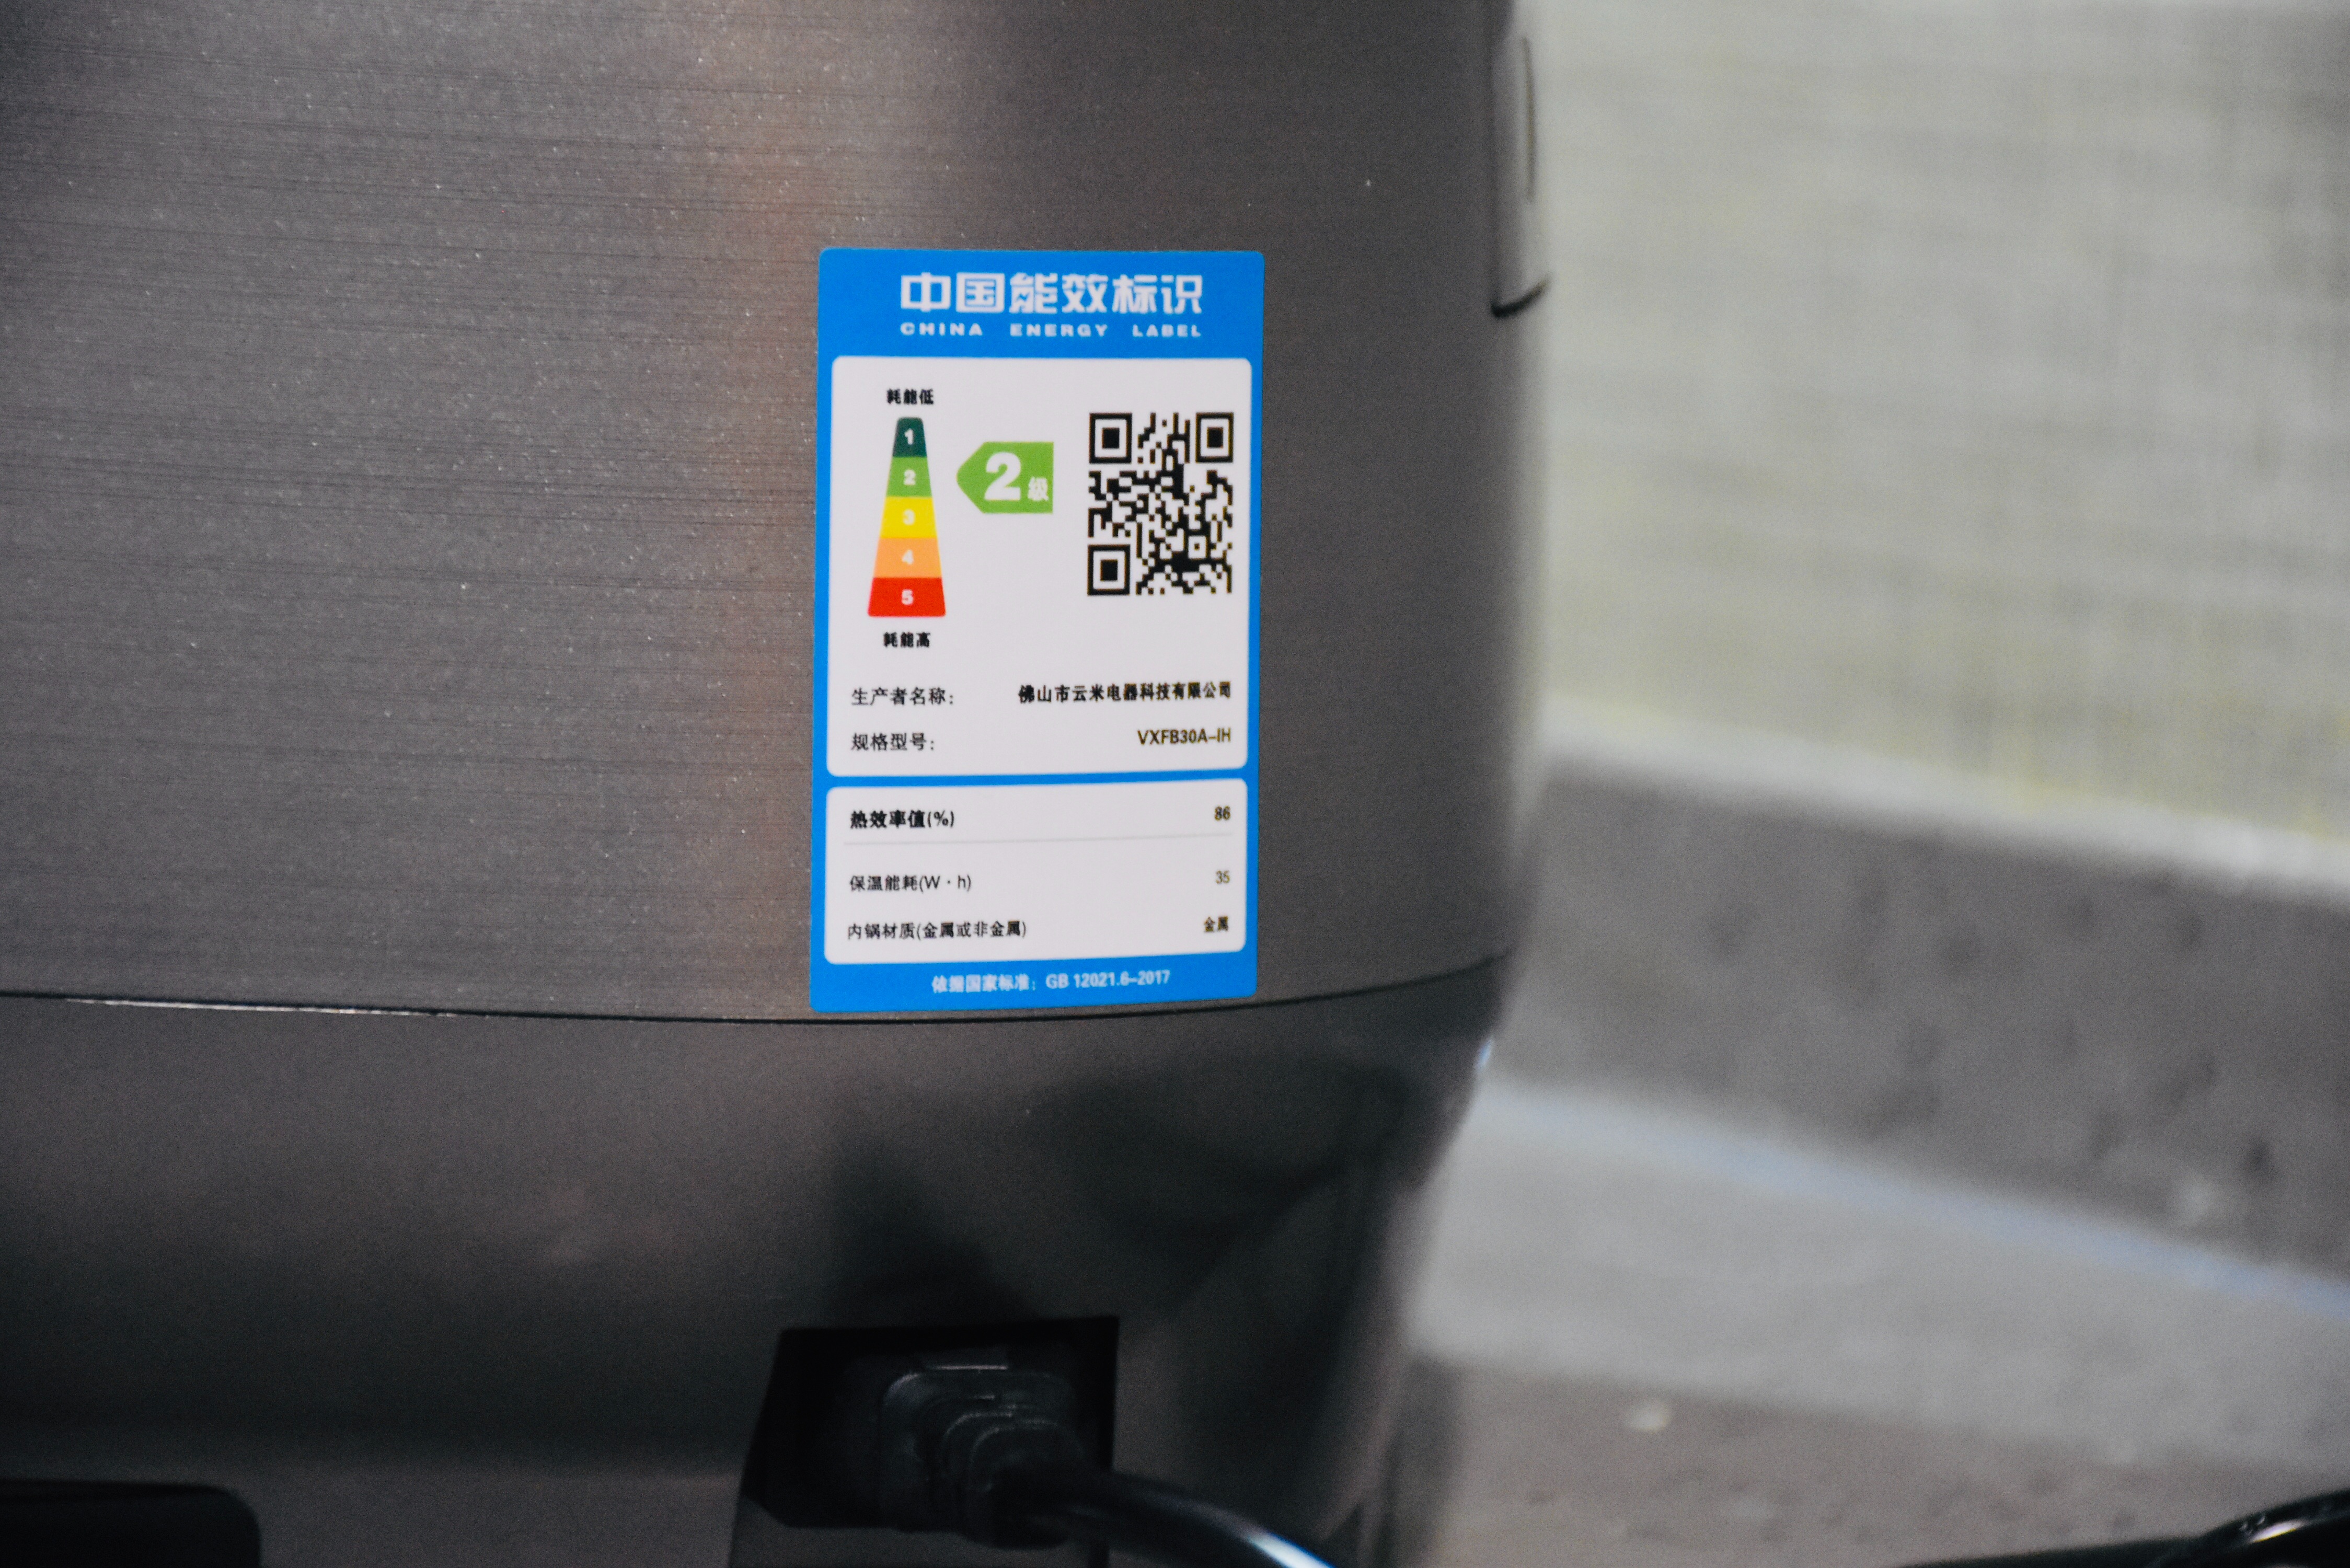 云米低糖电饭煲电源插孔位置张贴有中国能效标识,云米低糖电饭煲达到